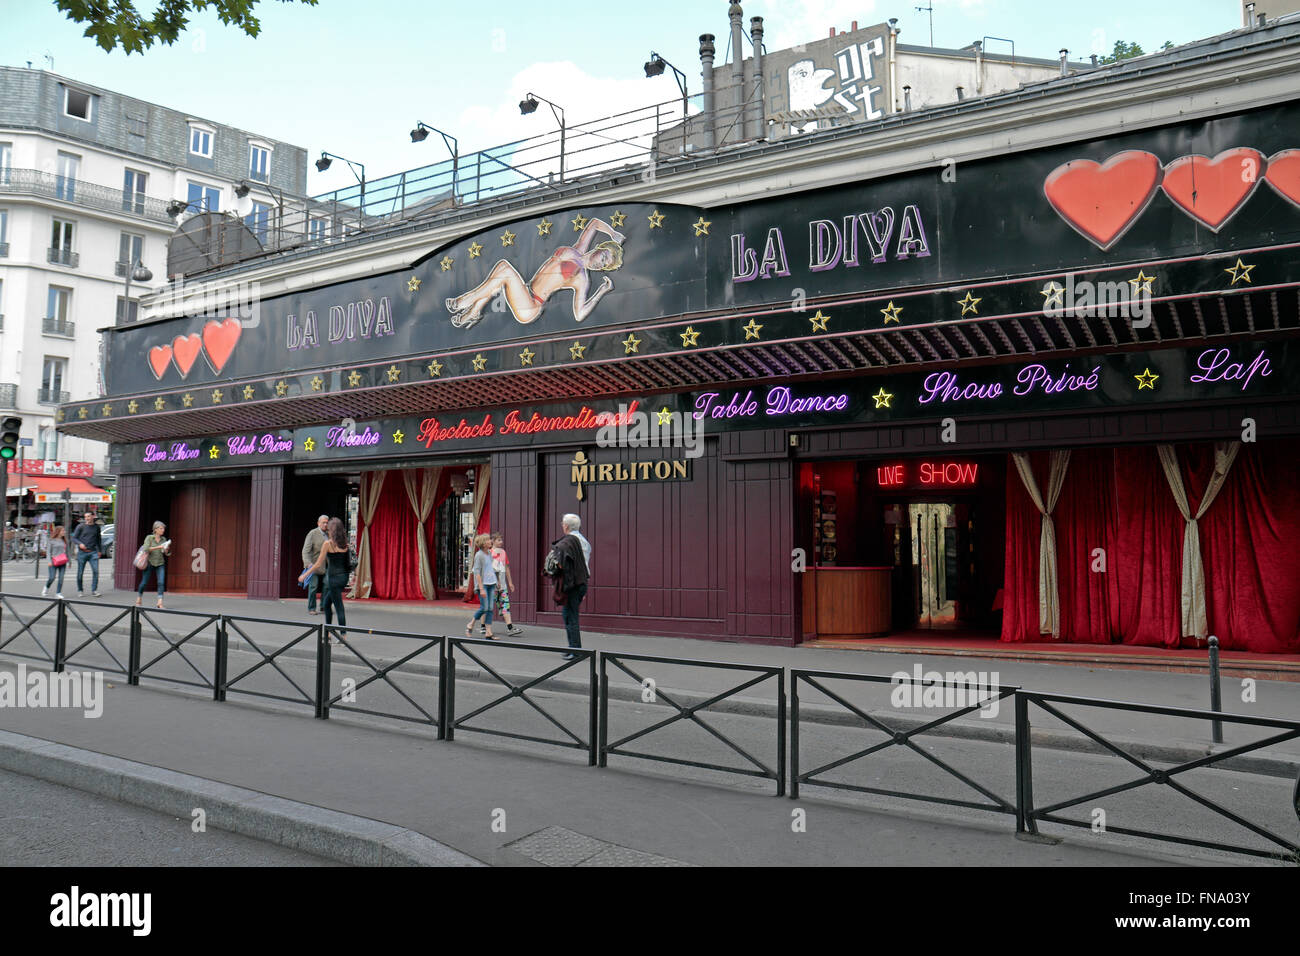 Strip clubs in paris